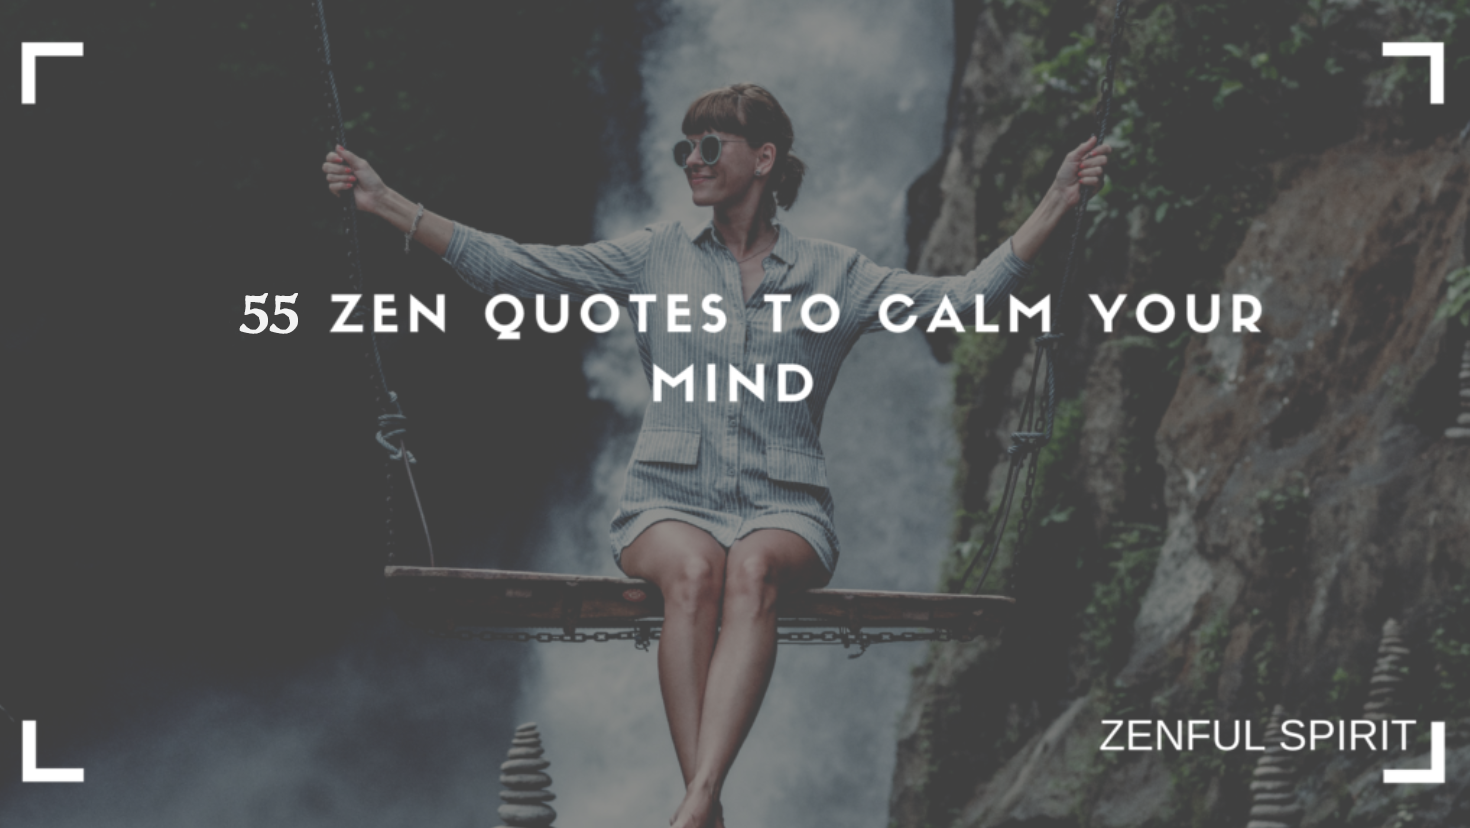 famous quotes zen